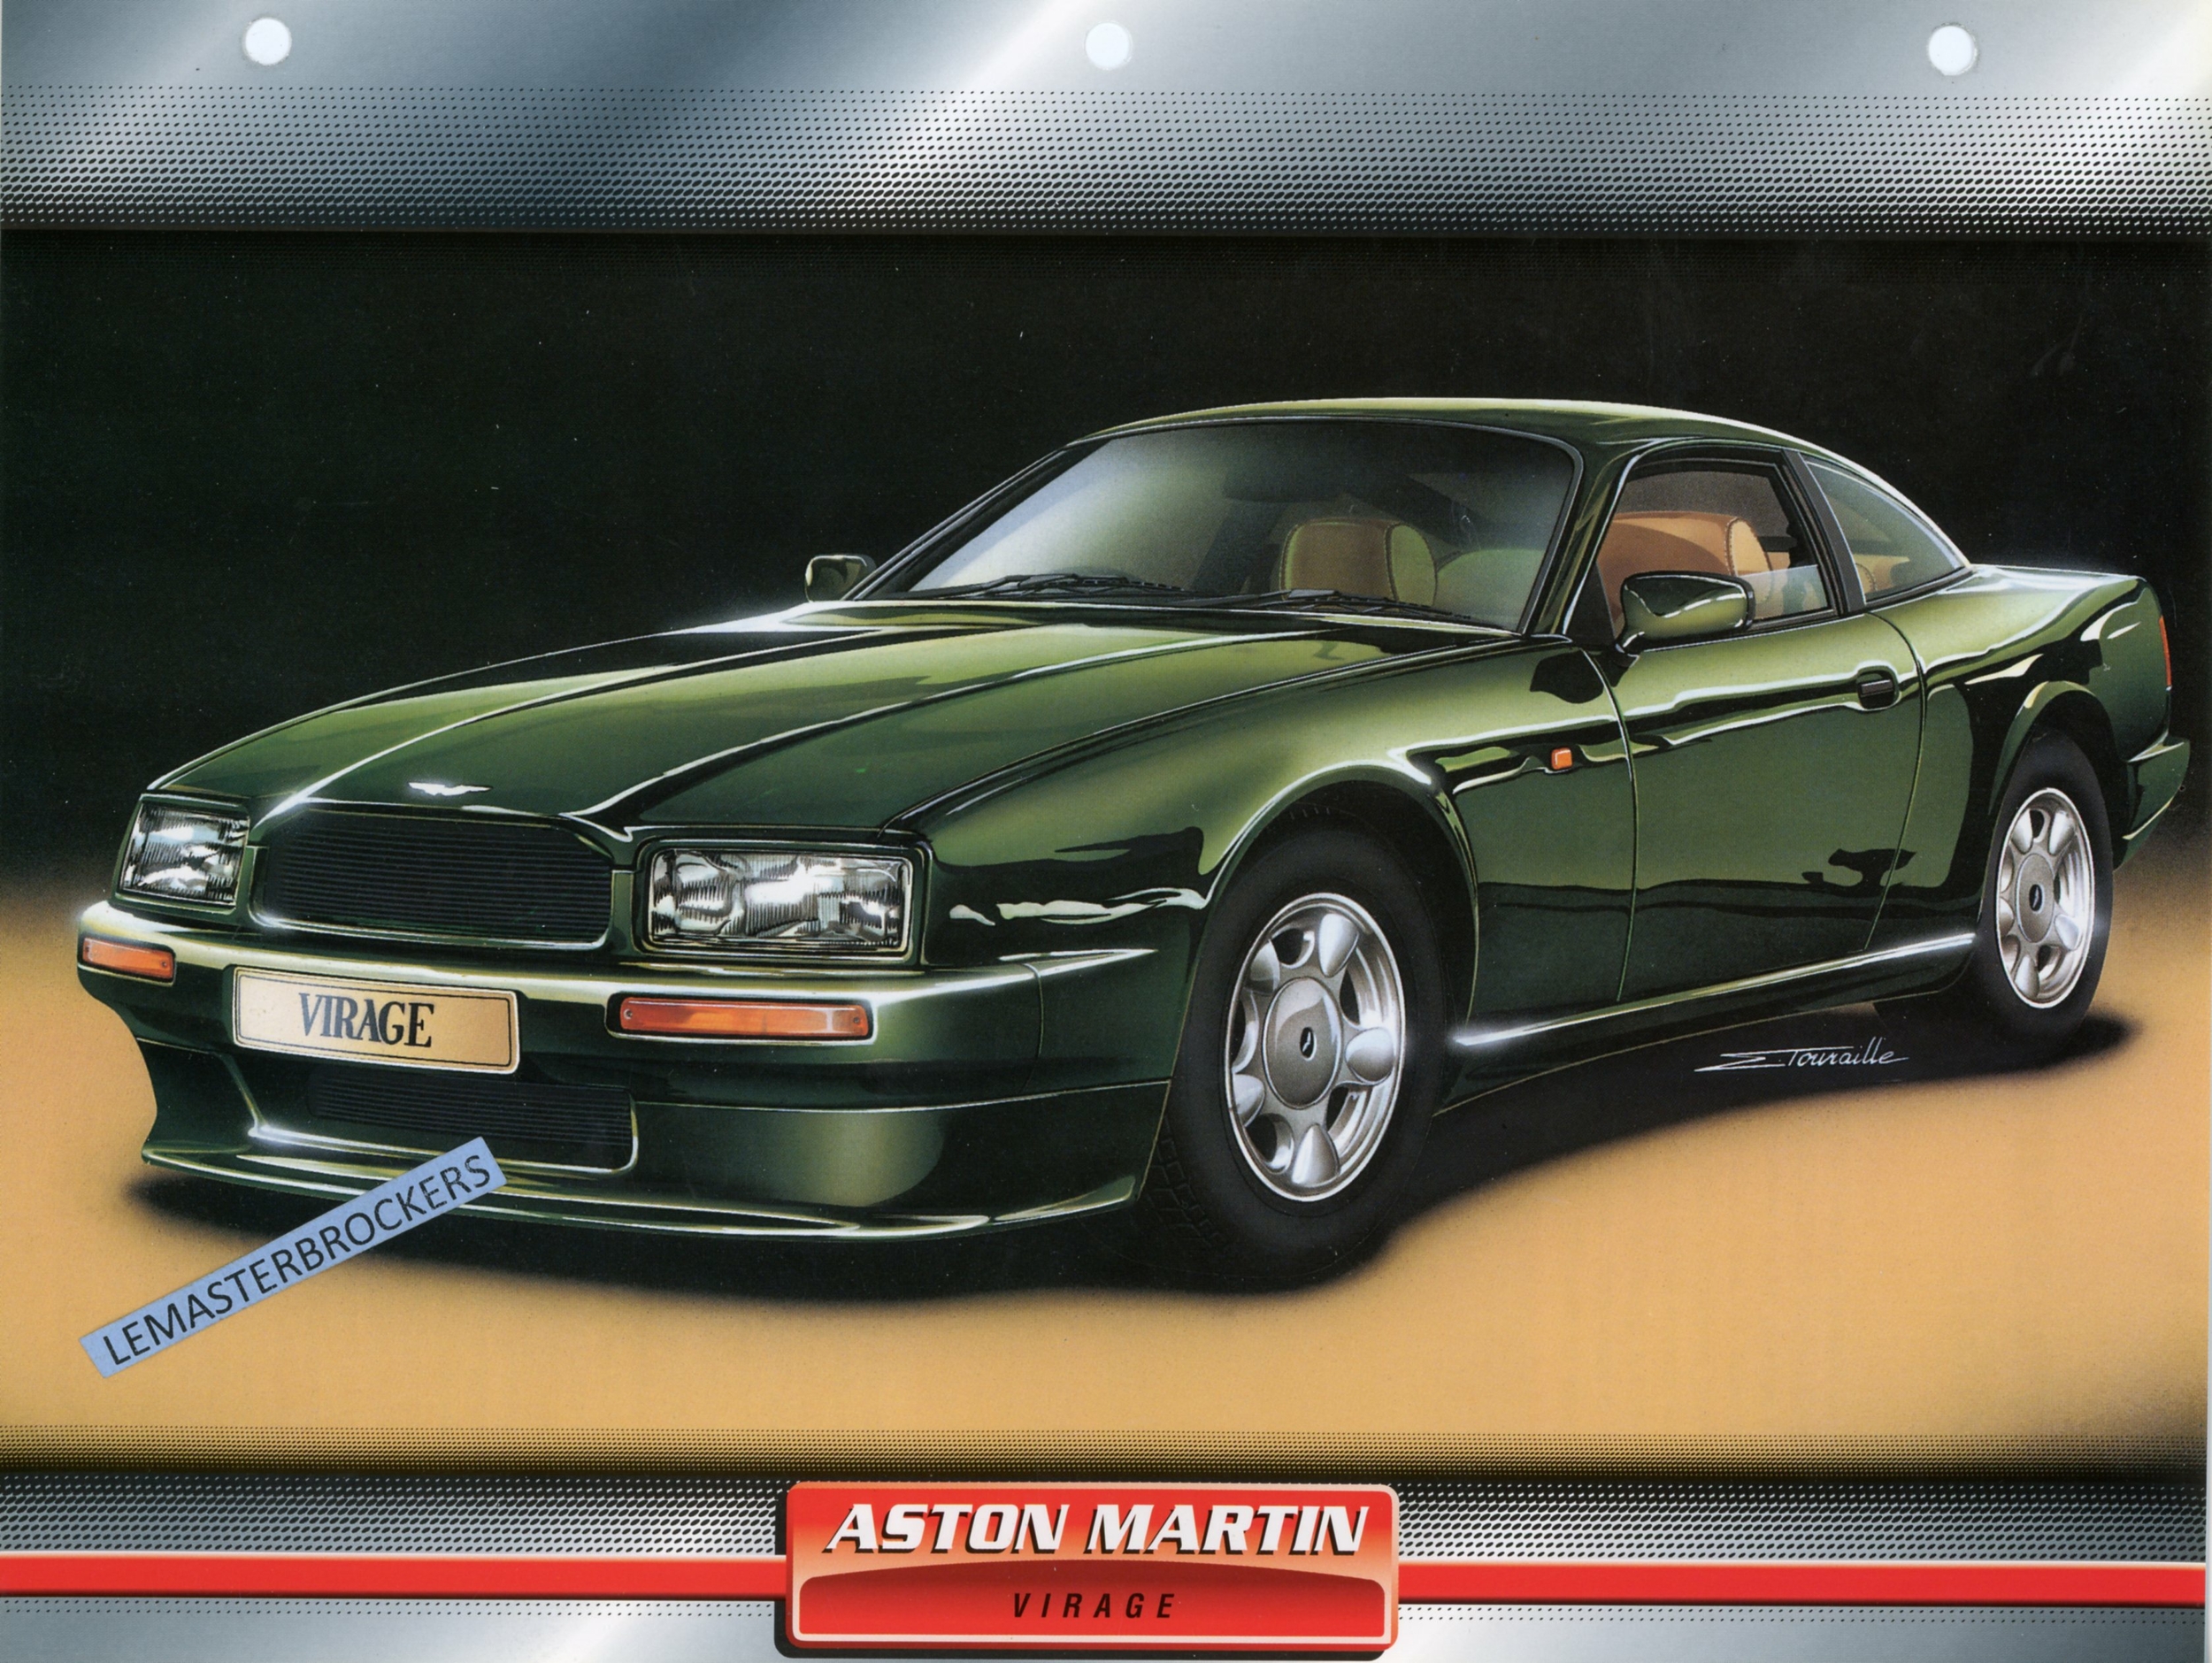 ASTON MARTIN VIRAGE 1992 - FICHE AUTO ATLAS LITTÉRATURE AUTOMOBILE CARACTÉRISTIQUES TECHNIQUES